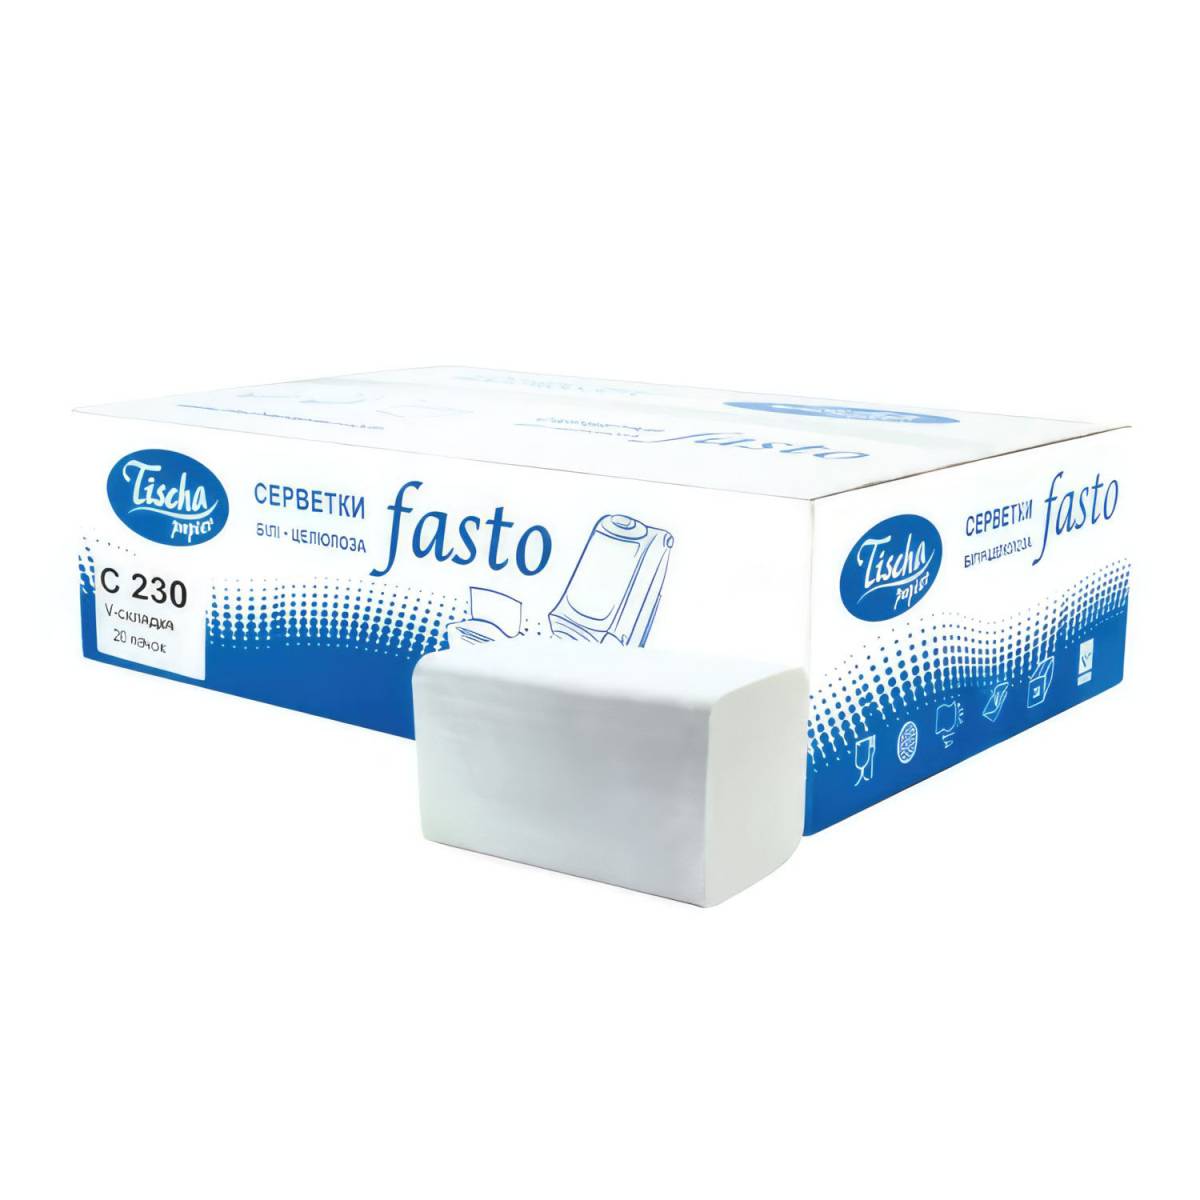 Салфетки столовые FASTO 20 упаковок (C230) C230 Tischa Papier